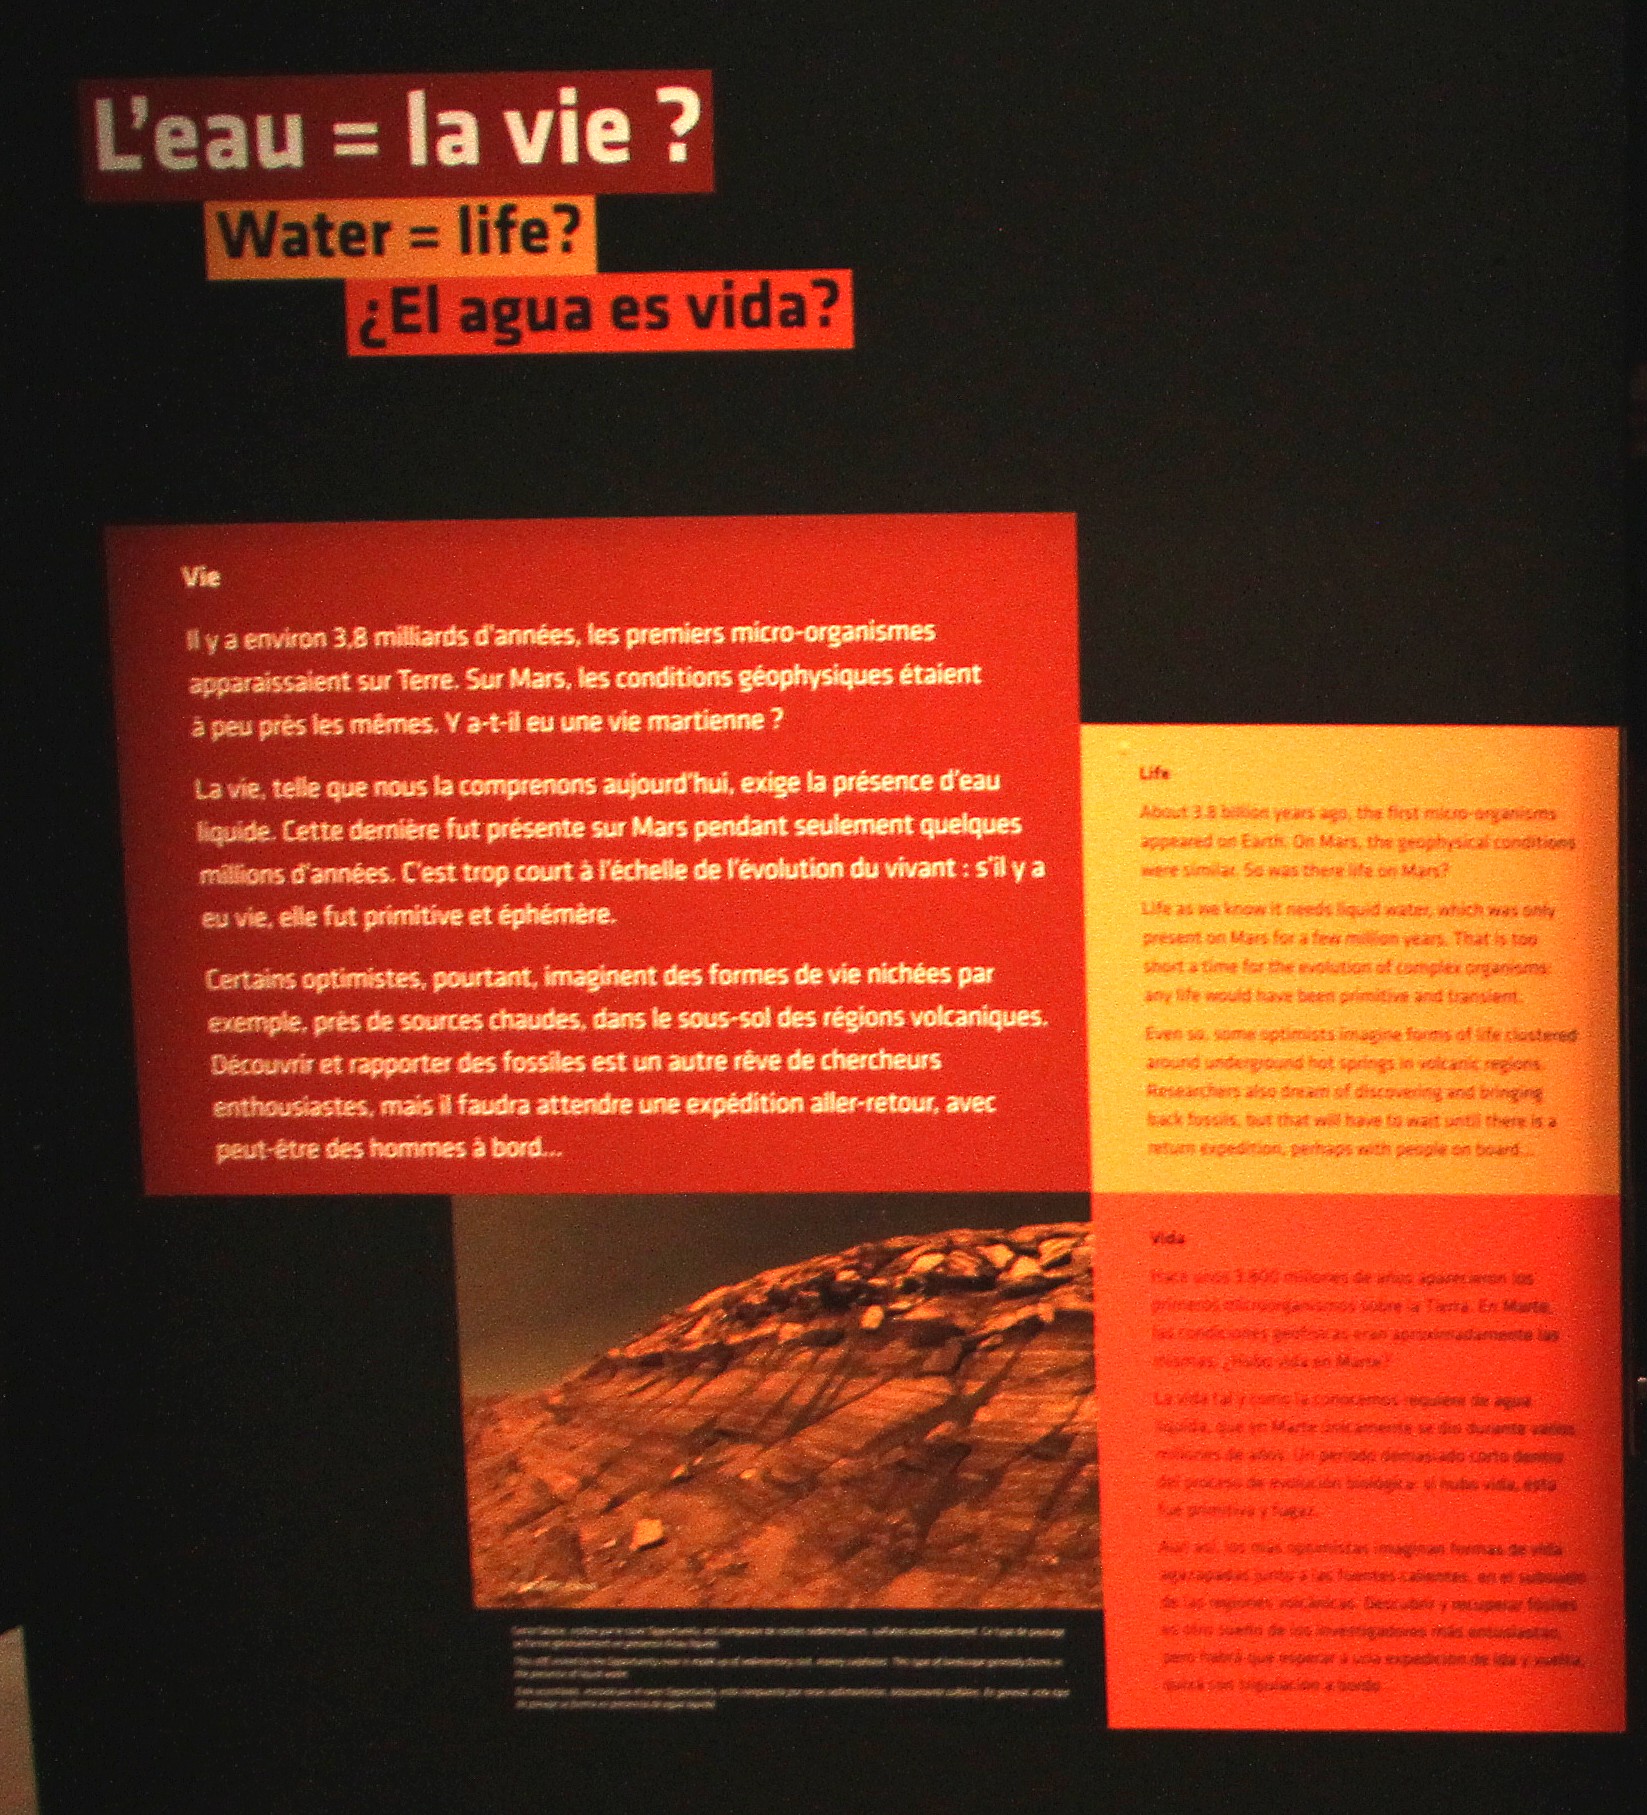 16 02 18 - 16h 30m 49s - Explorez Mars Palais de la Découverte rec